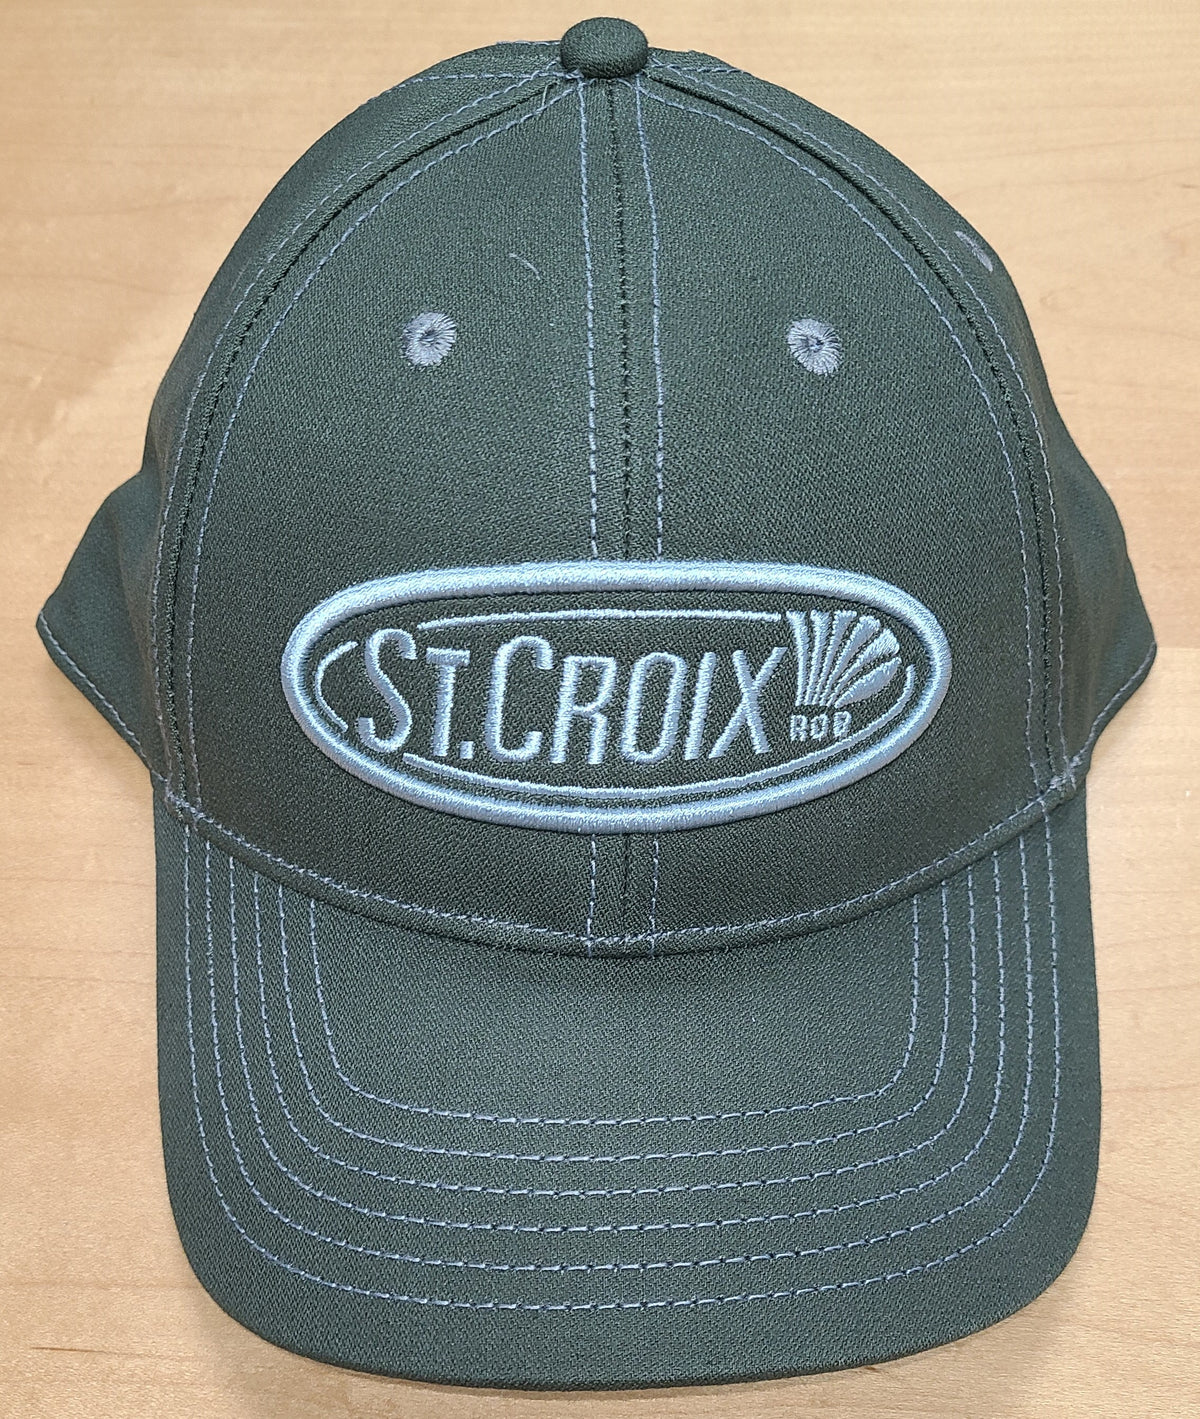 St. Croix Hats for Men